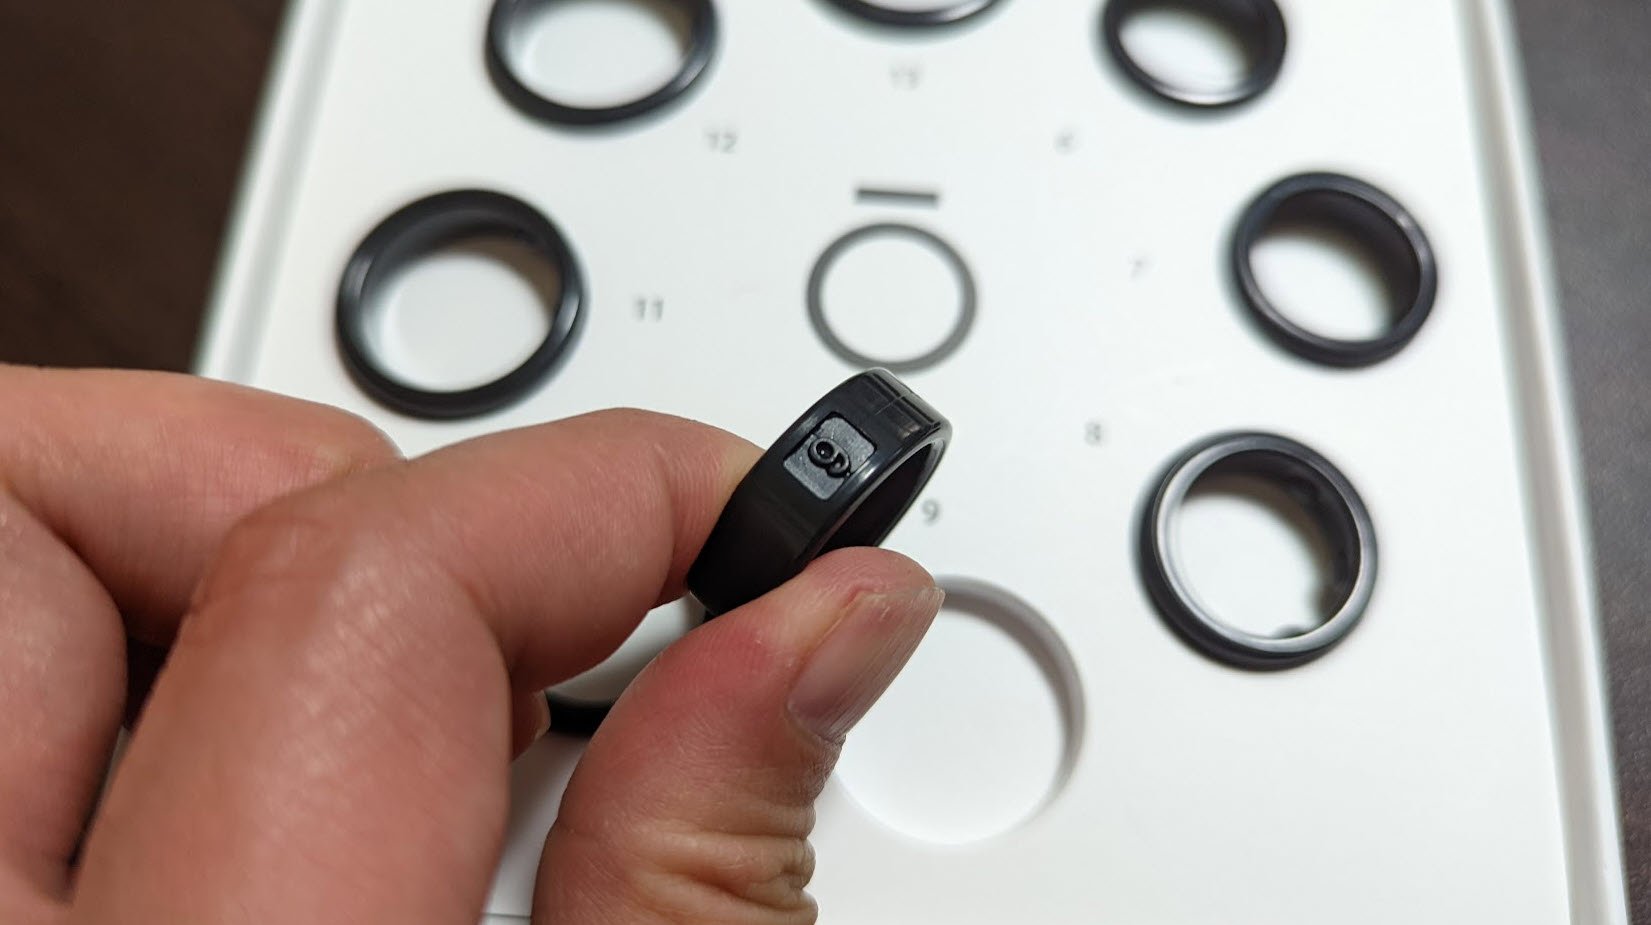 Oura Ring 3 の指のサイズが合わないのでサイズ交換をしたメモ – 1ft 